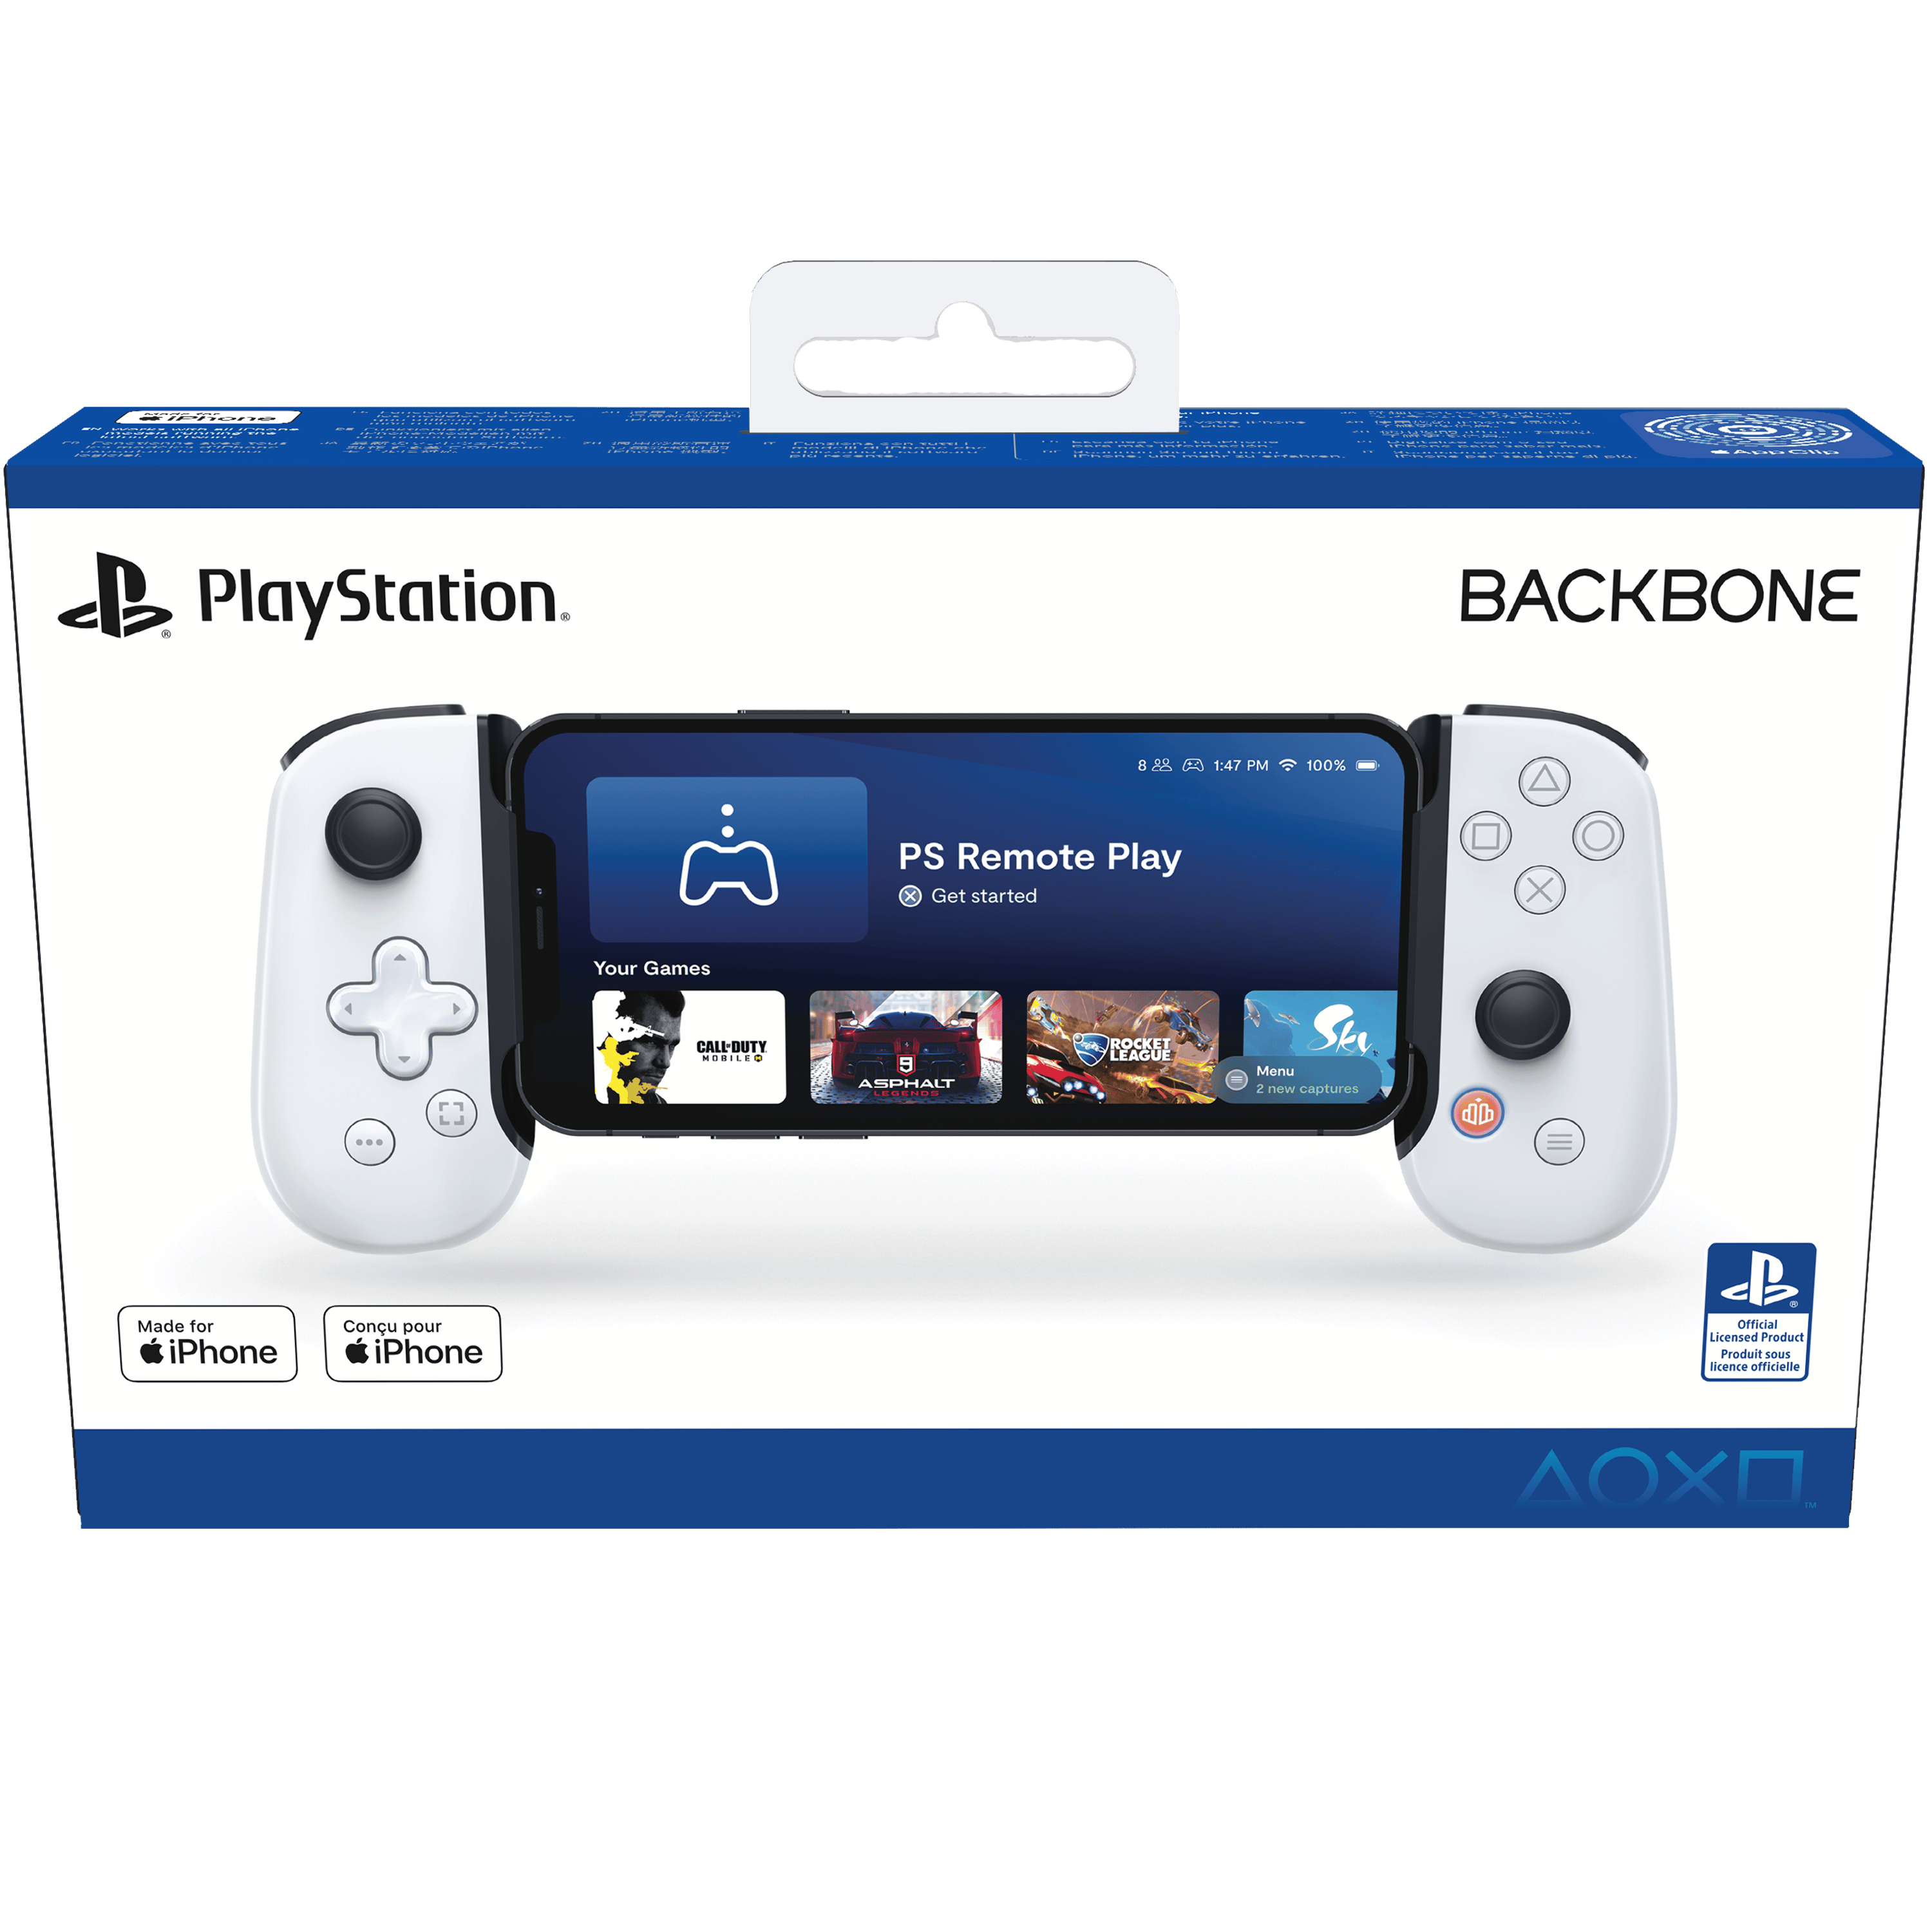 Backbone One - Playstation Edition